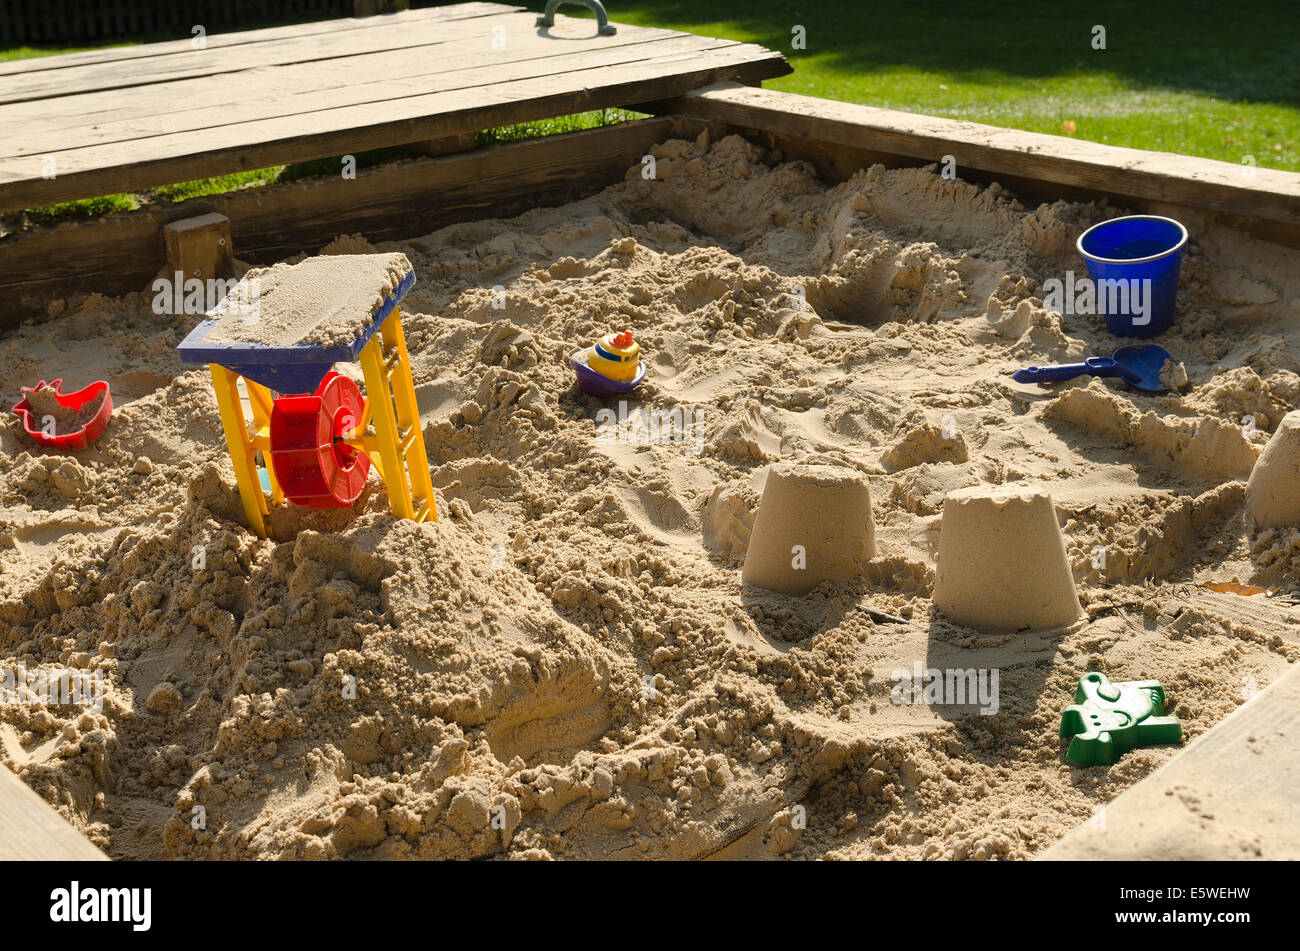 Jouer et Apprendre à sable avec des jouets en plastique utilisés pour l'imagination créative et d'apprentissage de lecture et d'interaction sociale Banque D'Images